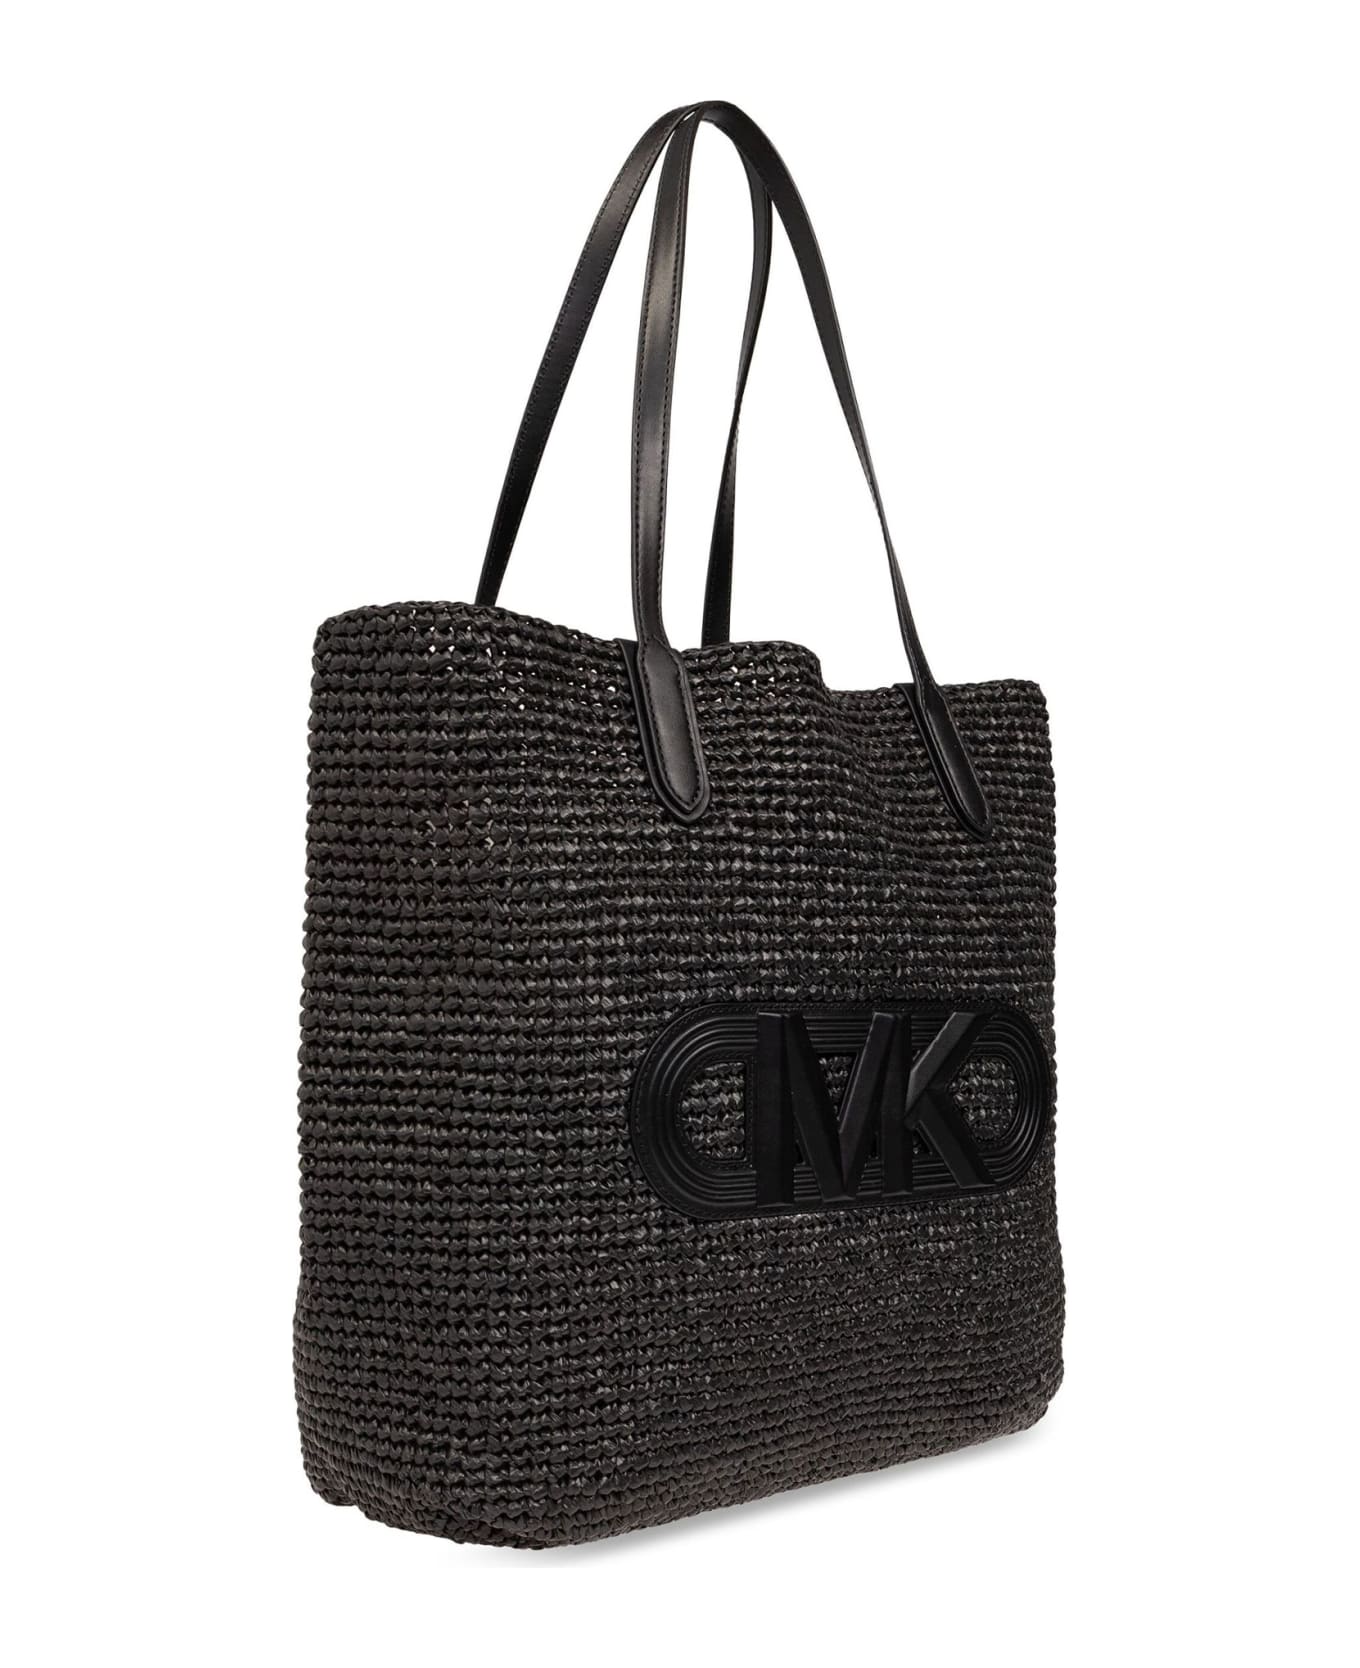 Michael Kors Eliza Tote Bag In Black Straw With Logo - BLACK BLACK